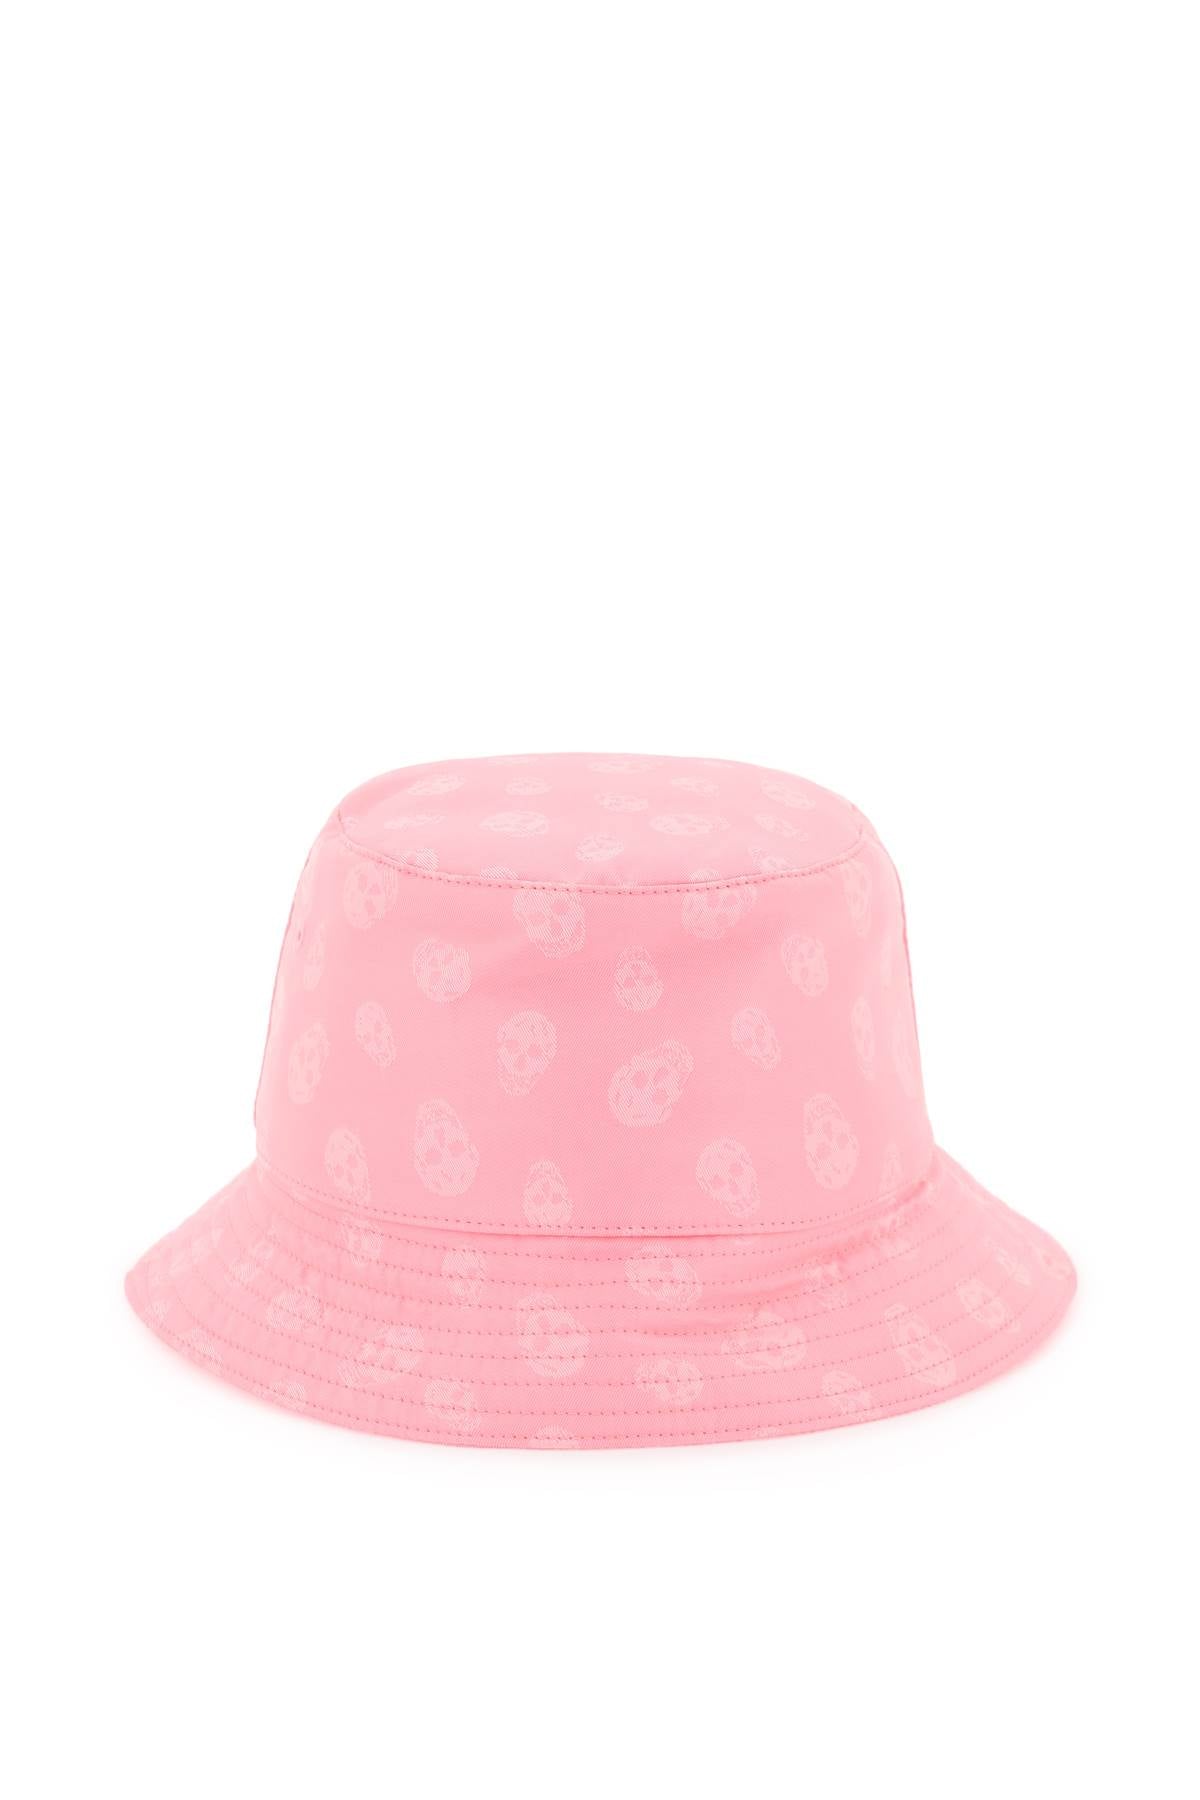 McQueen Skull Bucket Hat in Pink